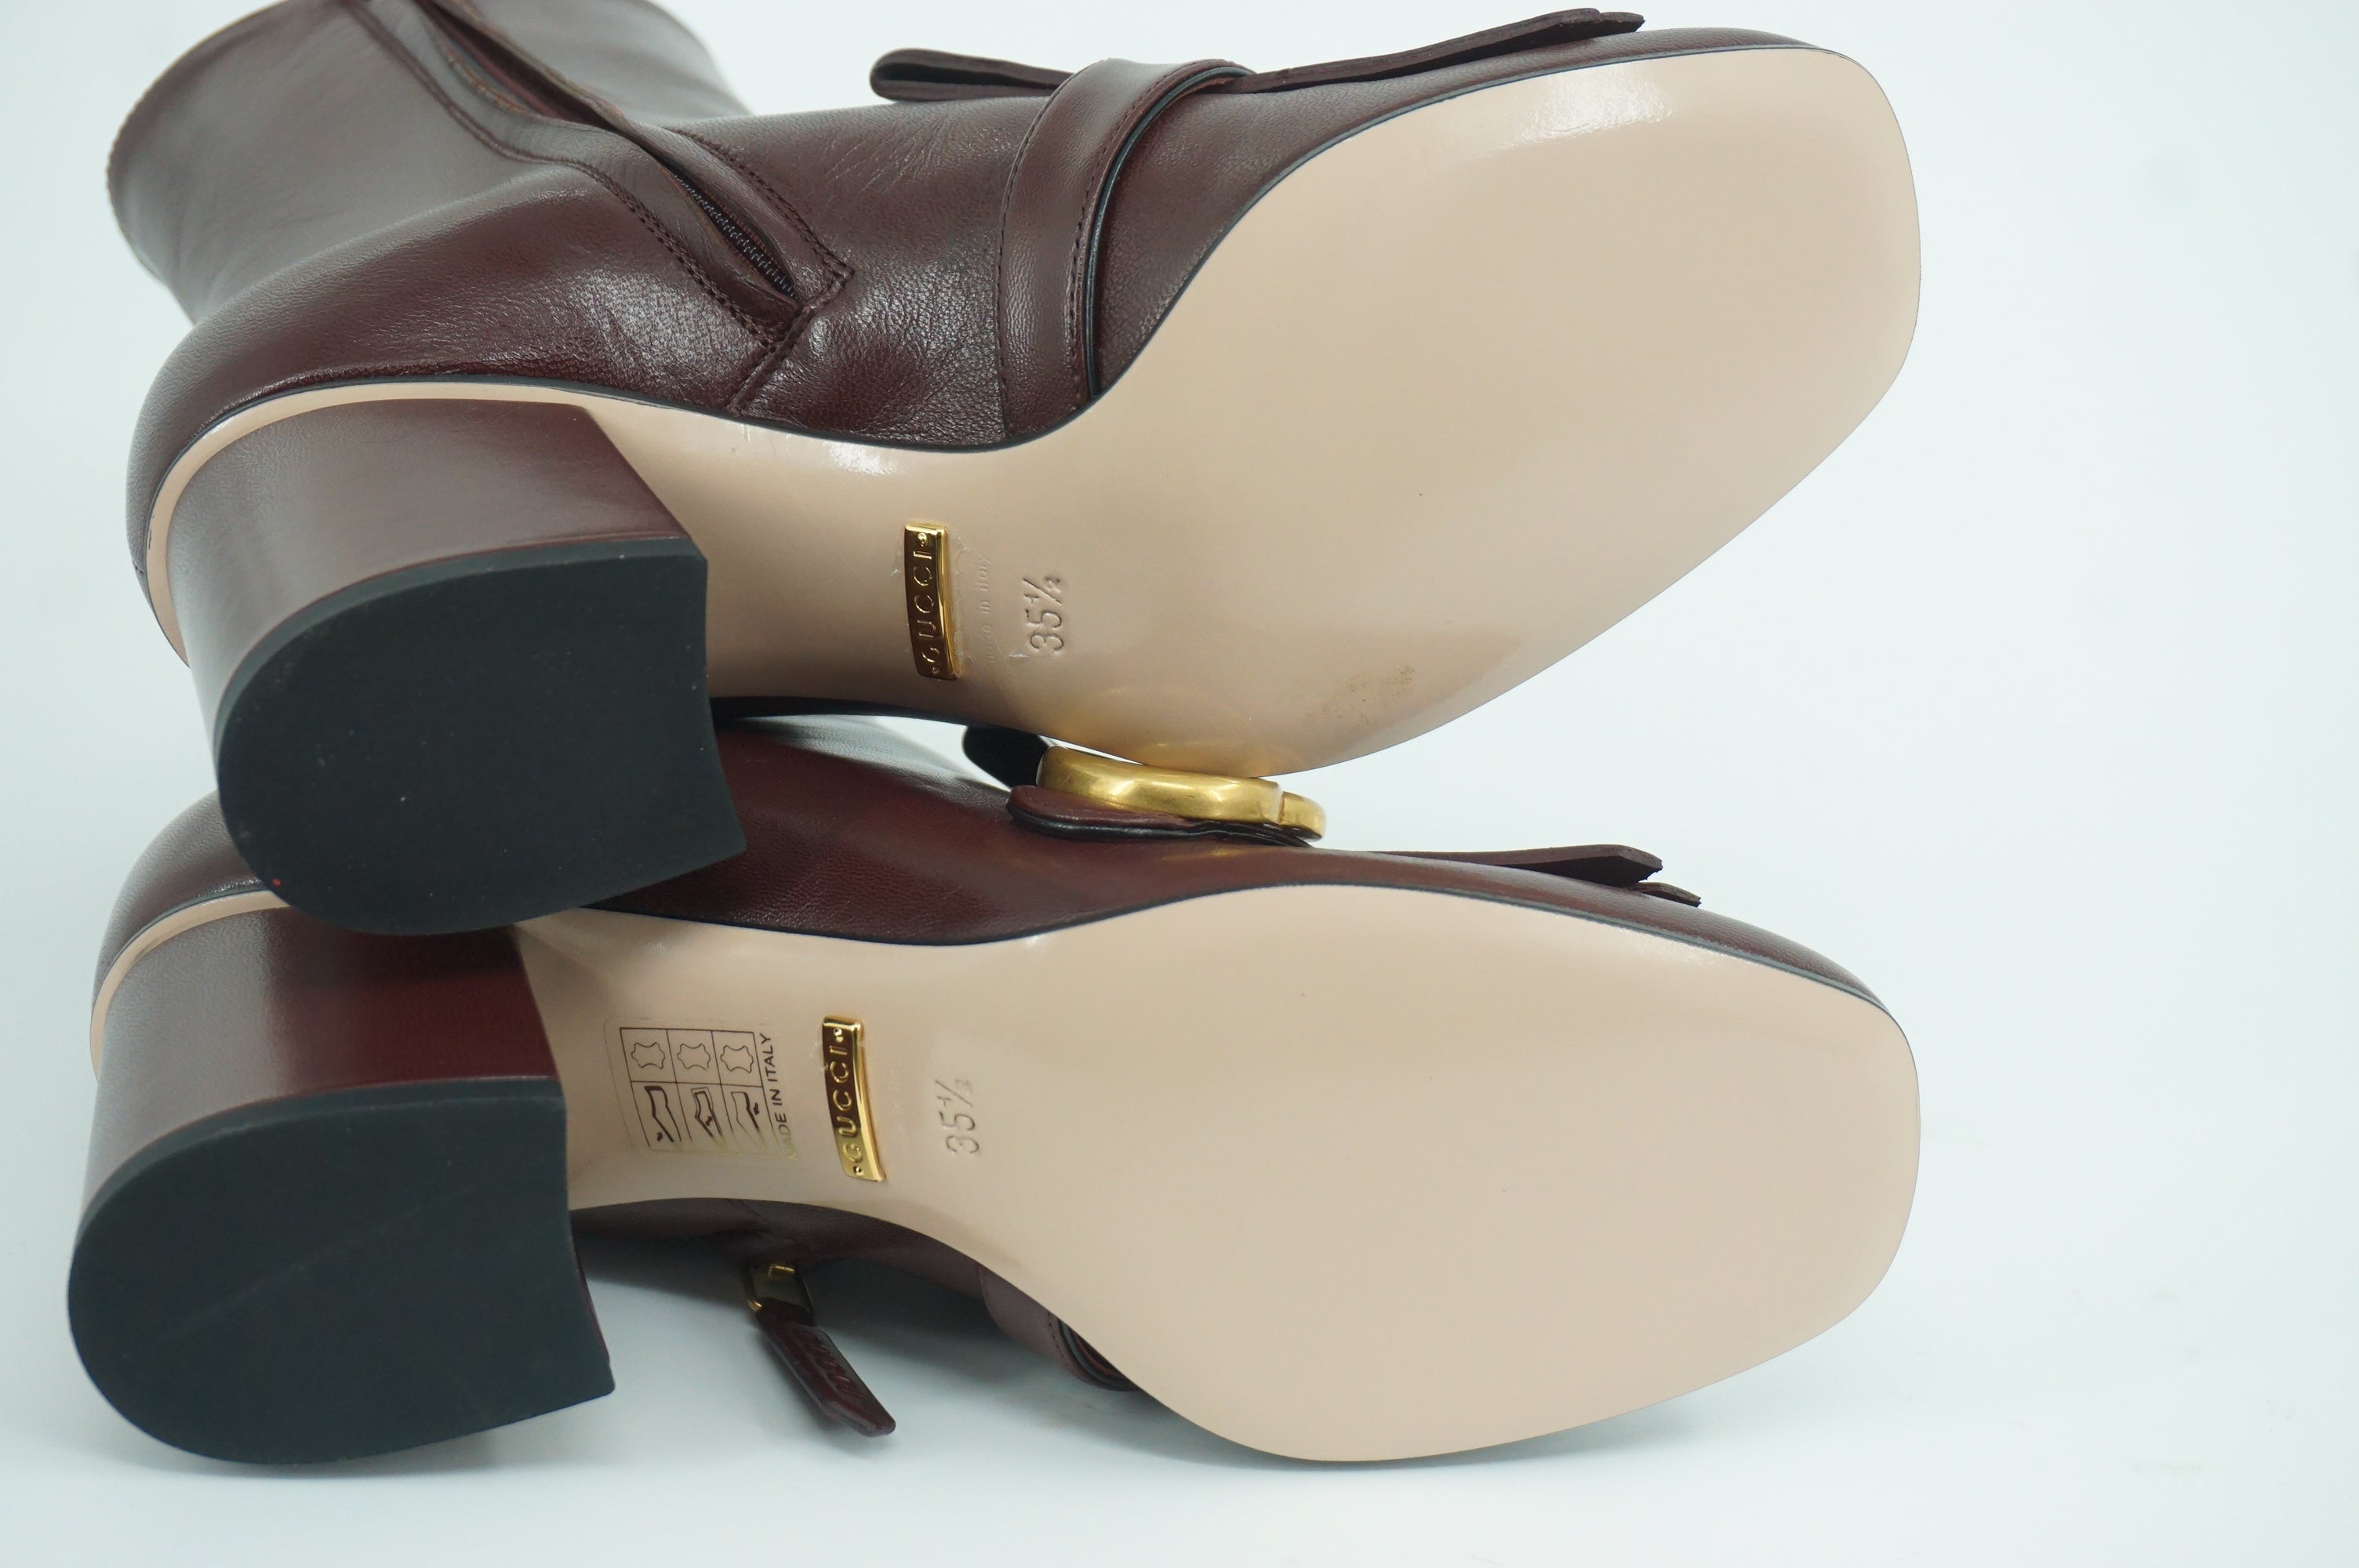 Gucci Marmont GG Kiltie Fringe Leather Ankle Boots Pumps SZ 35.5 NIB Logo $1250